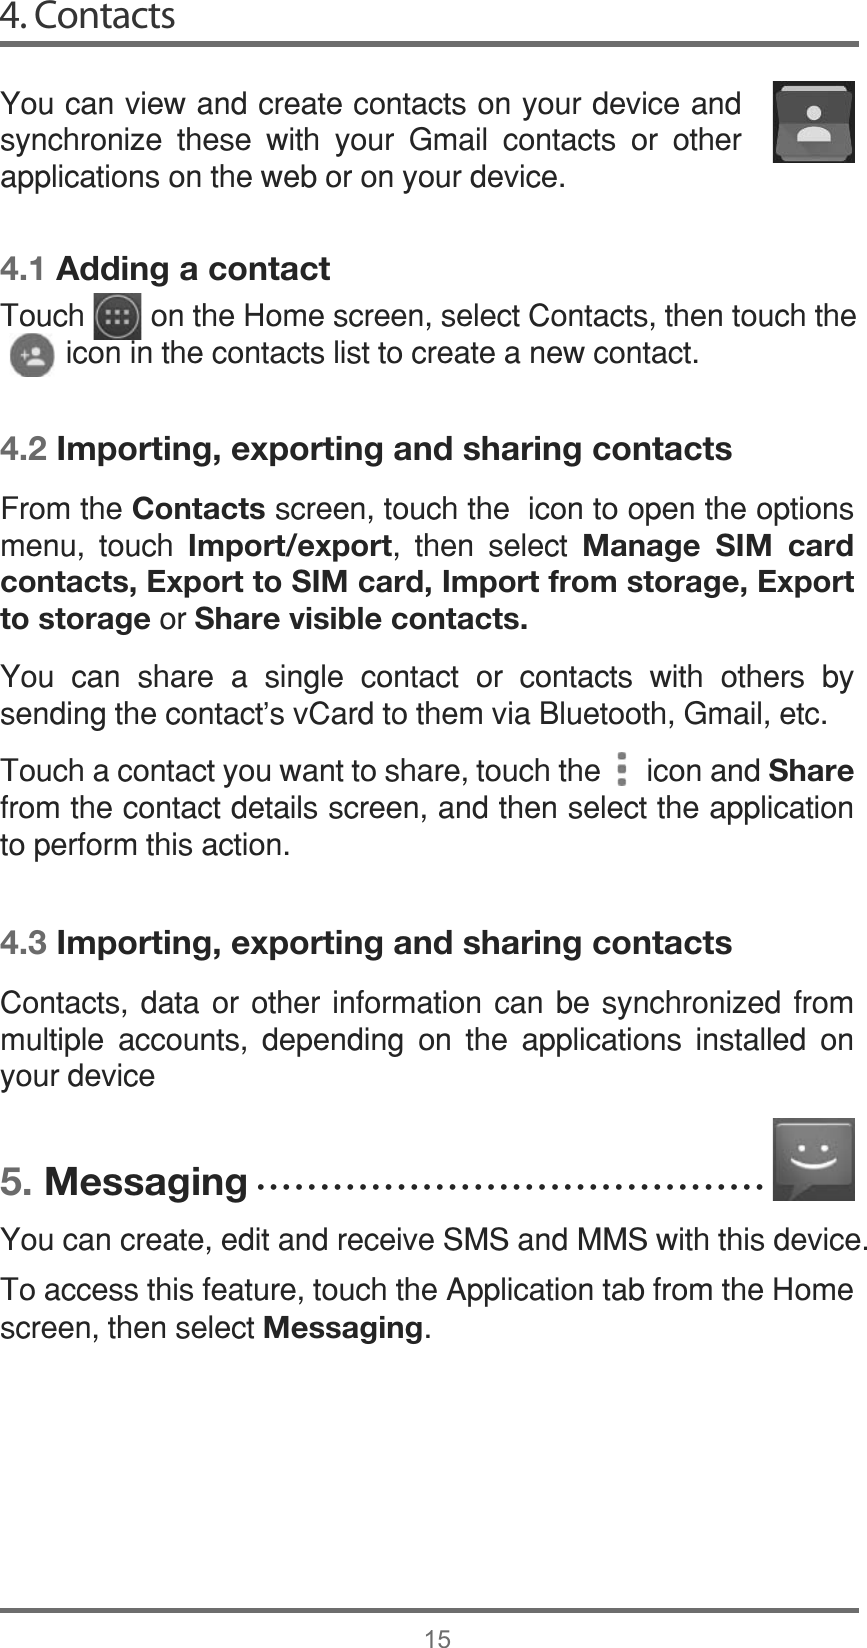 4. Contacts154.1 Adding a contact4.2 Importing, exporting and sharing contacts4.3 Importing, exporting and sharing contacts5. Messaging&lt;RXFDQYLHZDQGFUHDWHFRQWDFWVRQ\RXUGHYLFHDQGV\QFKURQL]H WKHVH ZLWK \RXU *PDLO FRQWDFWV RU RWKHUDSSOLFDWLRQVRQWKHZHERURQ\RXUGHYLFH&amp;RQWDFWV GDWD RU RWKHU LQIRUPDWLRQ FDQ EH V\QFKURQL]HG IURPPXOWLSOH DFFRXQWV GHSHQGLQJ RQ WKH DSSOLFDWLRQV LQVWDOOHG RQ\RXUGHYLFH&lt;RXFDQFUHDWHHGLWDQGUHFHLYH606DQG006ZLWKWKLVGHYLFH7RDFFHVVWKLVIHDWXUHWRXFKWKH$SSOLFDWLRQWDEIURPWKH+RPHVFUHHQWKHQVHOHFWMessaging)URPWKHContactsVFUHHQWRXFKWKHLFRQWRRSHQWKHRSWLRQVPHQX WRXFK Import/export WKHQ VHOHFW Manage SIM card contacts, Export to SIM card, Import from storage, Export to storageRUShare visible contacts.&lt;RX FDQ VKDUH D VLQJOH FRQWDFW RU FRQWDFWV ZLWK RWKHUV E\VHQGLQJWKHFRQWDFWVY&amp;DUGWRWKHPYLD%OXHWRRWK*PDLOHWF7RXFKDFRQWDFW\RXZDQWWRVKDUHWRXFKWKHLFRQDQGShareIURPWKHFRQWDFWGHWDLOVVFUHHQDQGWKHQVHOHFWWKHDSSOLFDWLRQWRSHUIRUPWKLVDFWLRQ7RXFKRQWKH+RPHVFUHHQVHOHFW&amp;RQWDFWVWKHQWRXFKWKHLFRQLQWKHFRQWDFWVOLVWWRFUHDWHDQHZFRQWDFWĆĆĆĆĆĆĆĆĆĆĆĆĆĆĆĆĆĆĆĆĆĆĆĆĆĆĆĆĆĆĆĆĆĆĆĆĆĆĆĆ